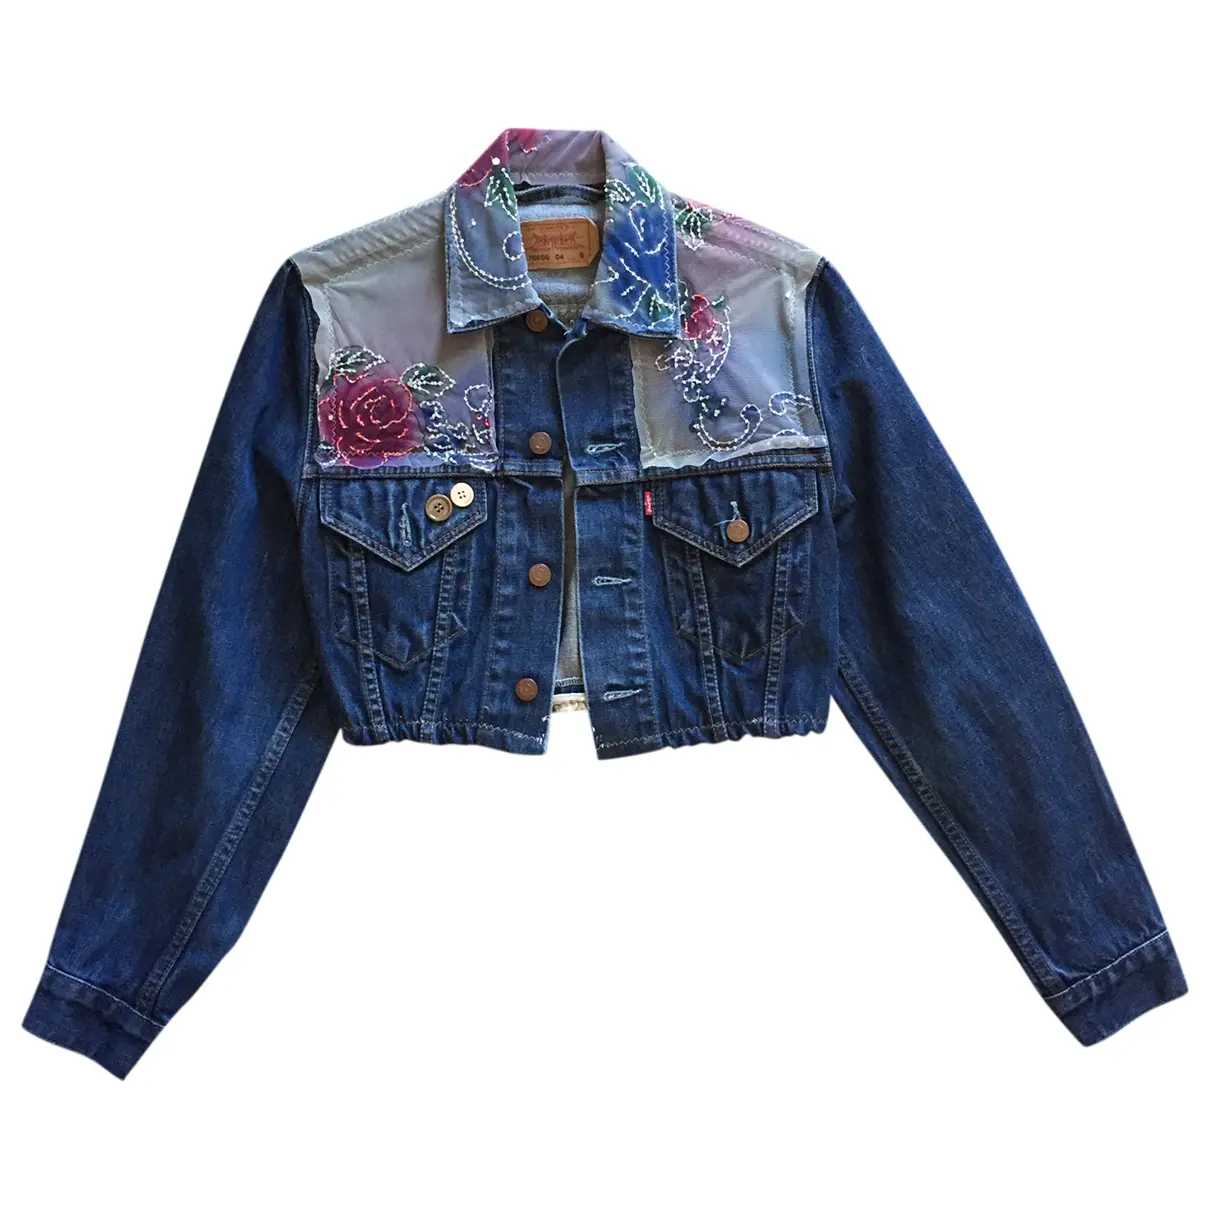 Jacket Levi's Vintage Clothing